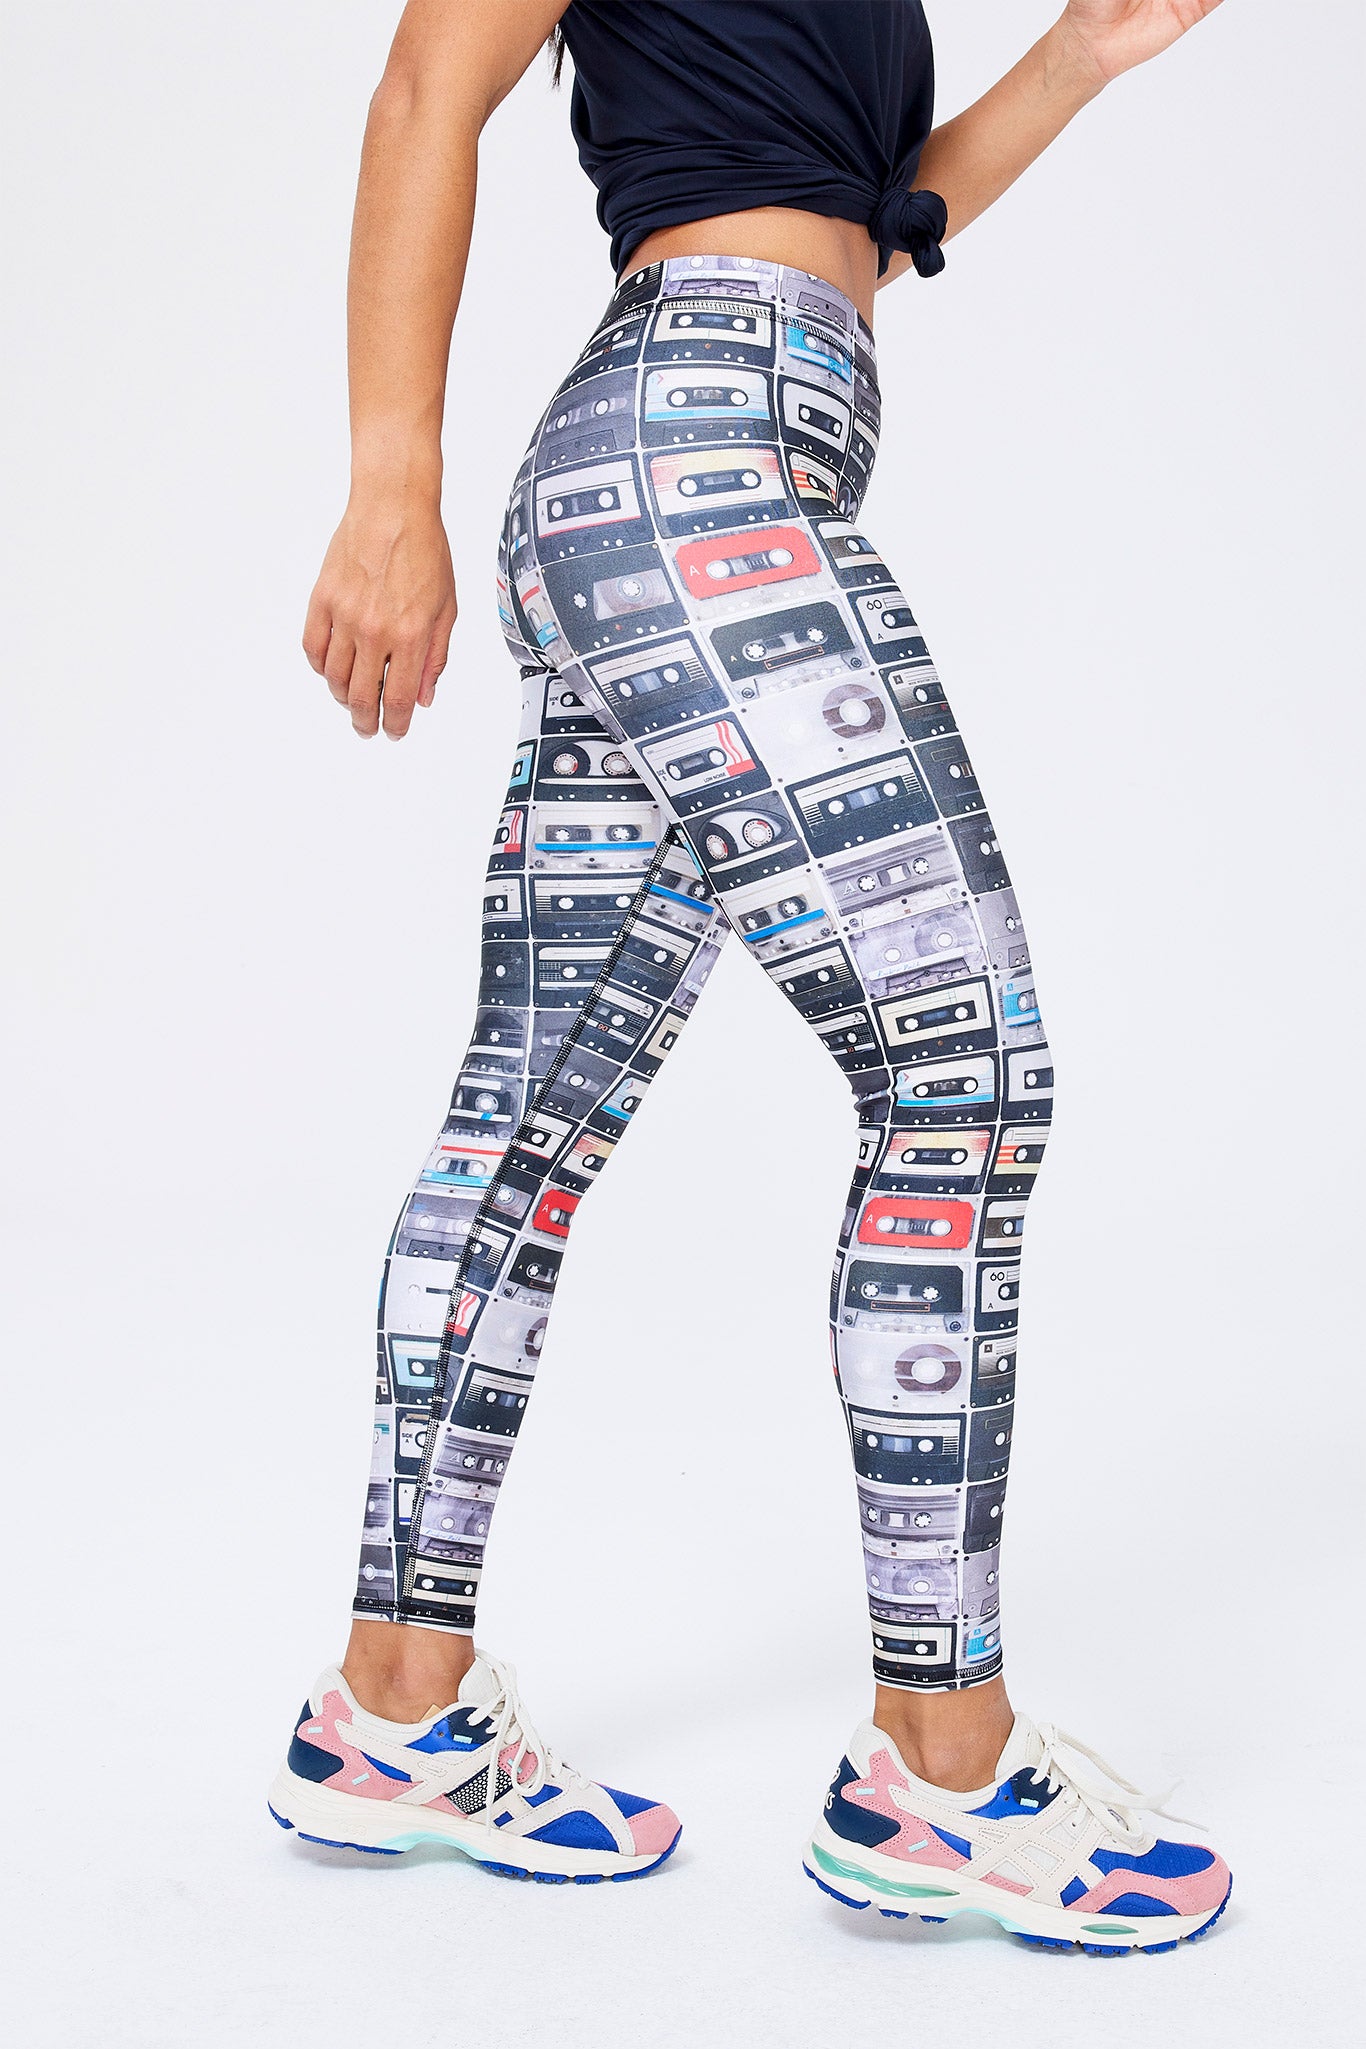 Womens printed leggings